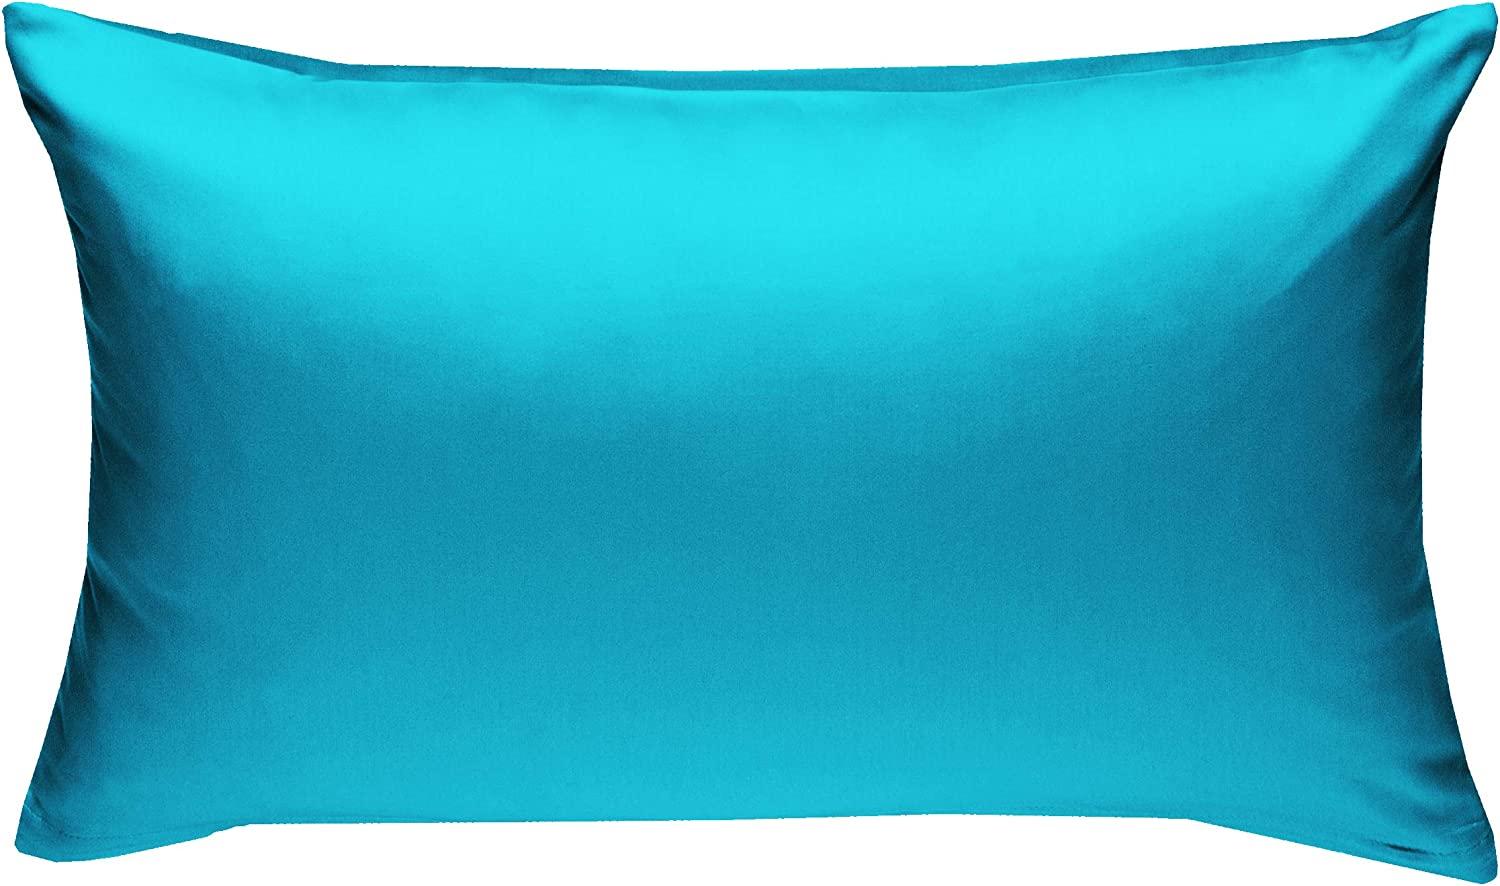 Bettwaesche-mit-Stil Mako-Satin / Baumwollsatin Bettwäsche uni / einfarbig türkis Kissenbezug 60x80 cm Bild 1